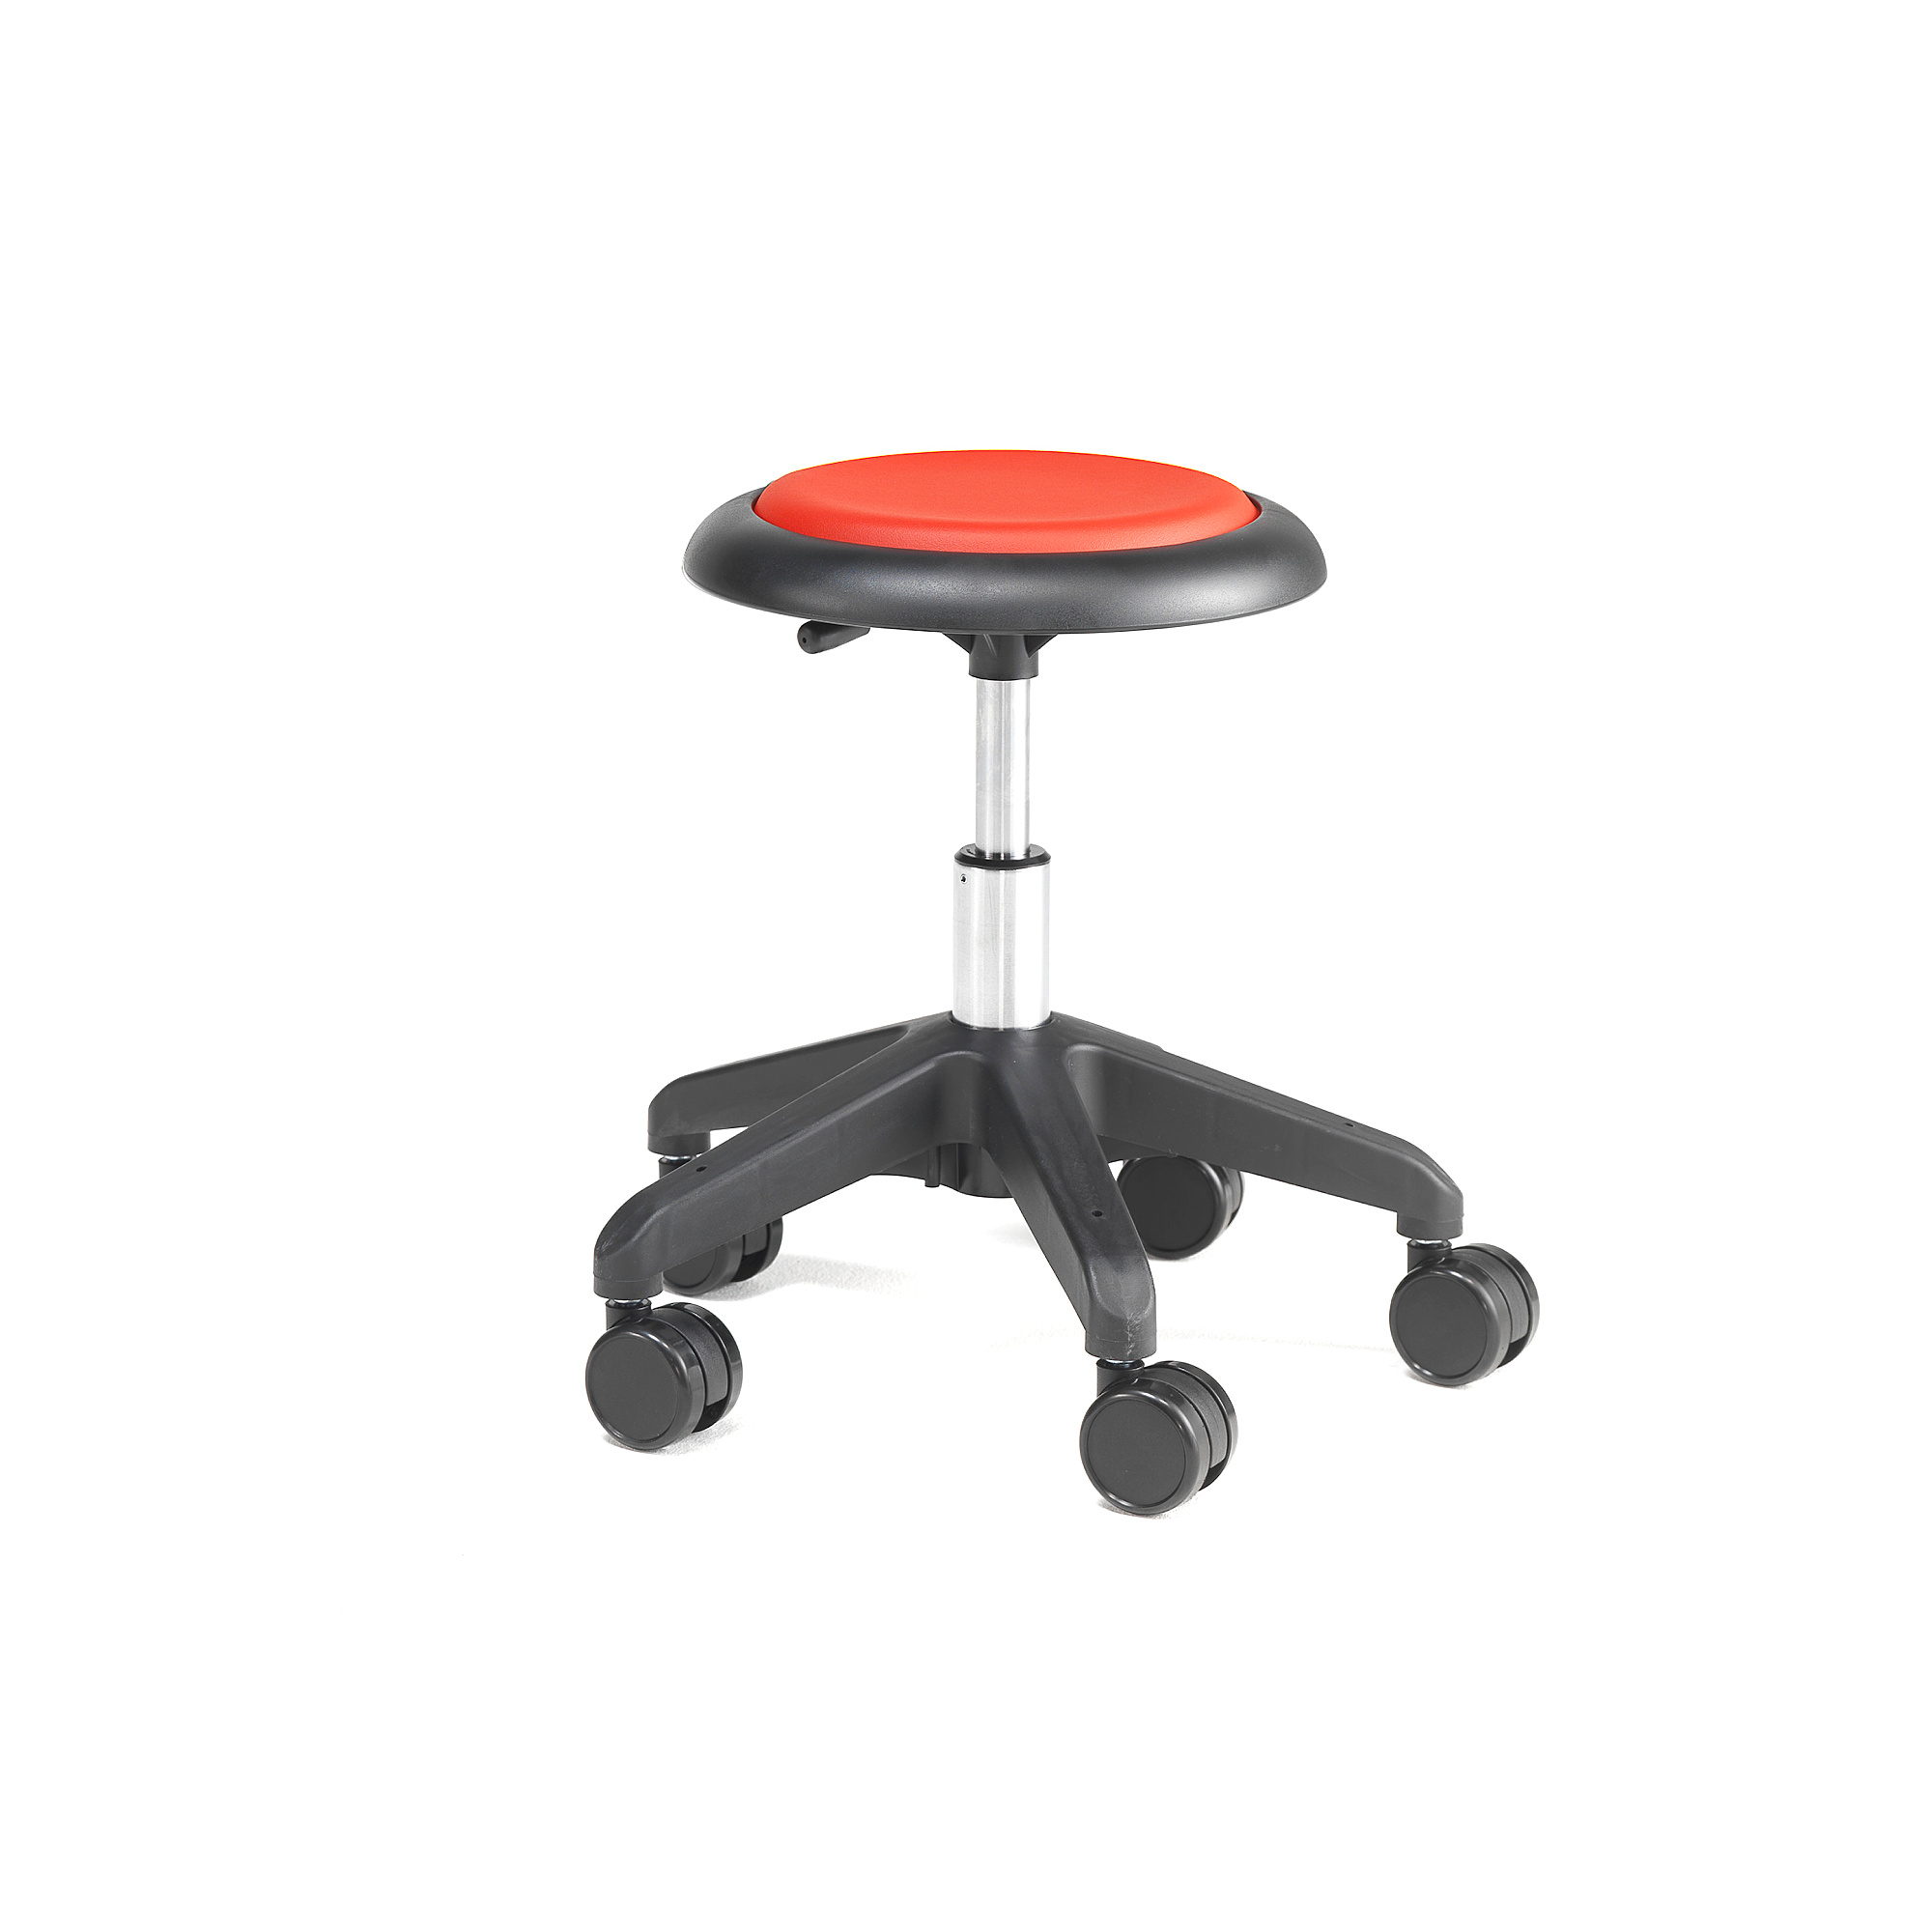 E-shop Pracovná dielenská stolička MICRO, s kolieskami, výška 380-510 mm, červená